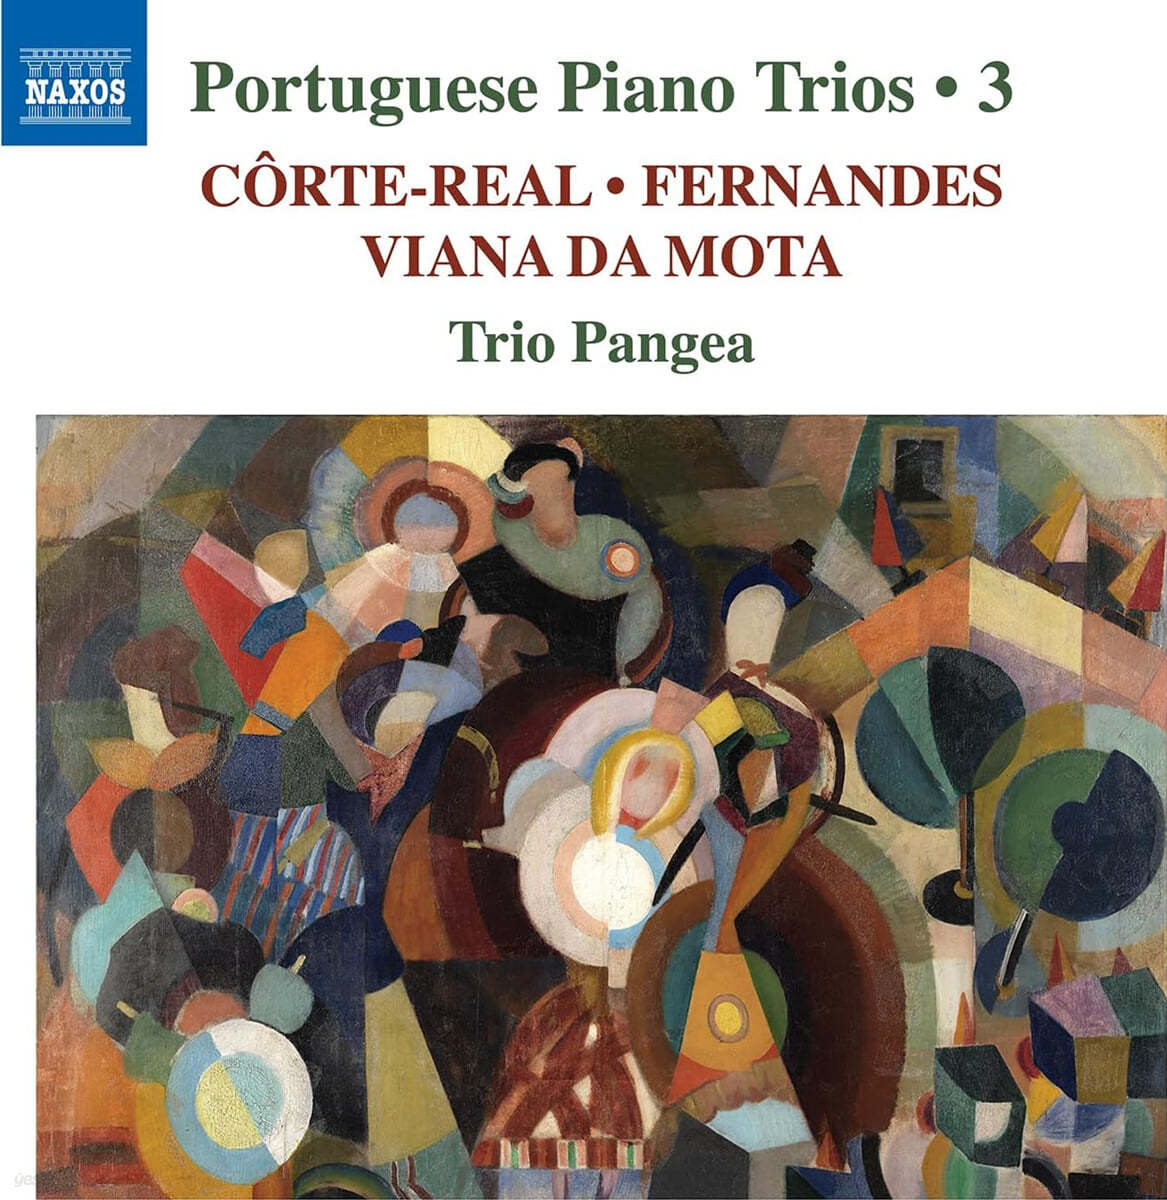 Trio Pangea 포르투갈 작곡가들의 피아노 삼중주 작품 3집 - 페르난데스, 코스테-레알, 비아나 다 모타 (Portuguese Piano Trios, Vol. 3)